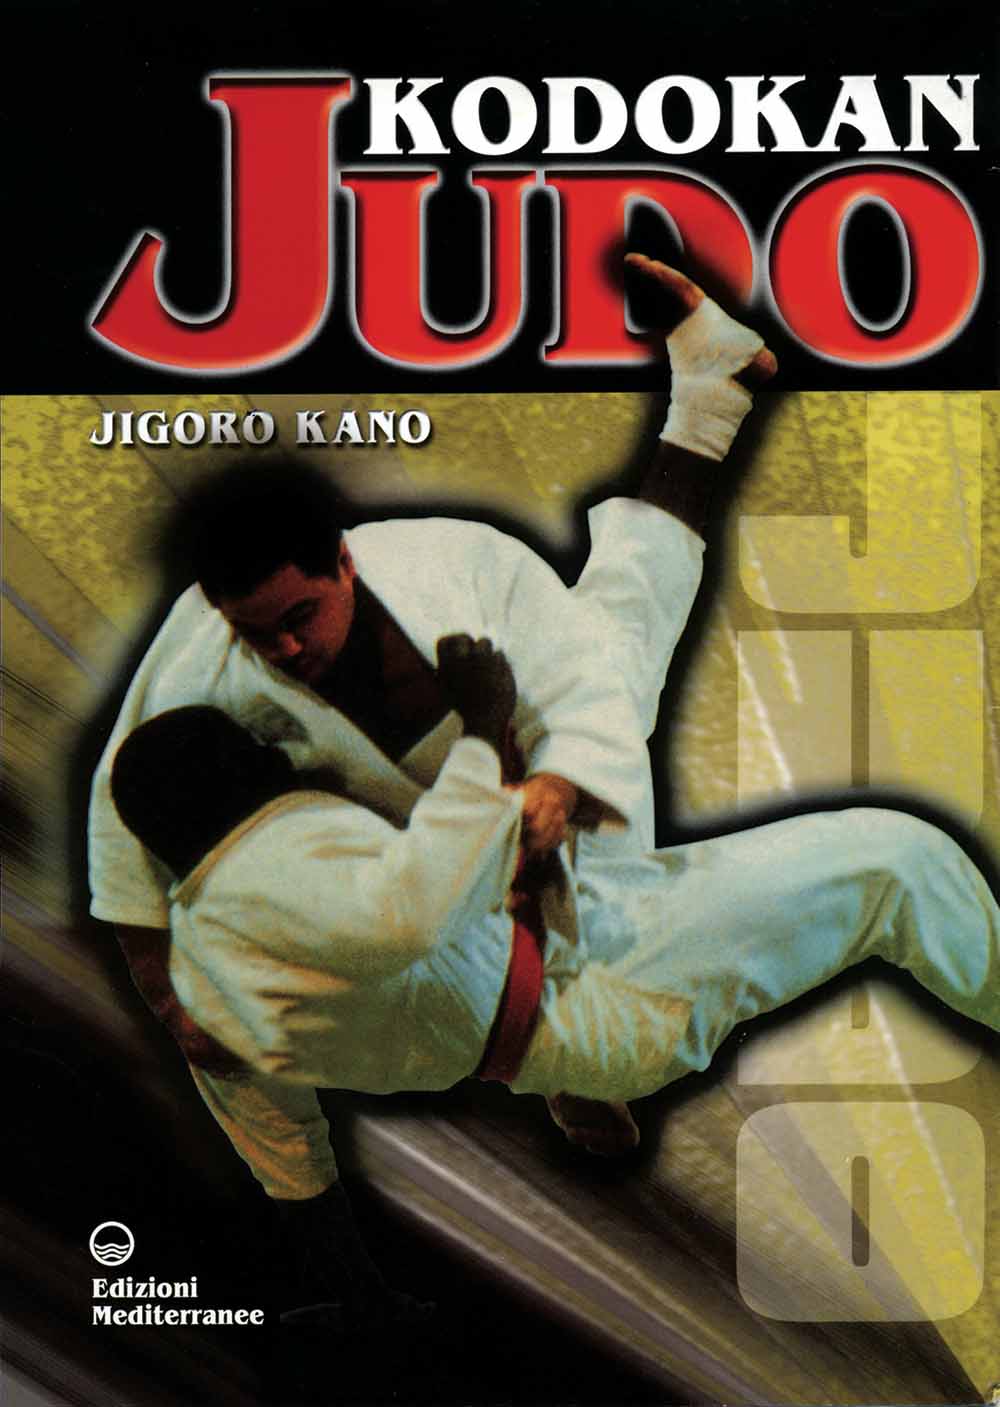 Libri Jigoro Kano - Kodokan Judo NUOVO SIGILLATO, EDIZIONE DEL 01/04/2005 SUBITO DISPONIBILE